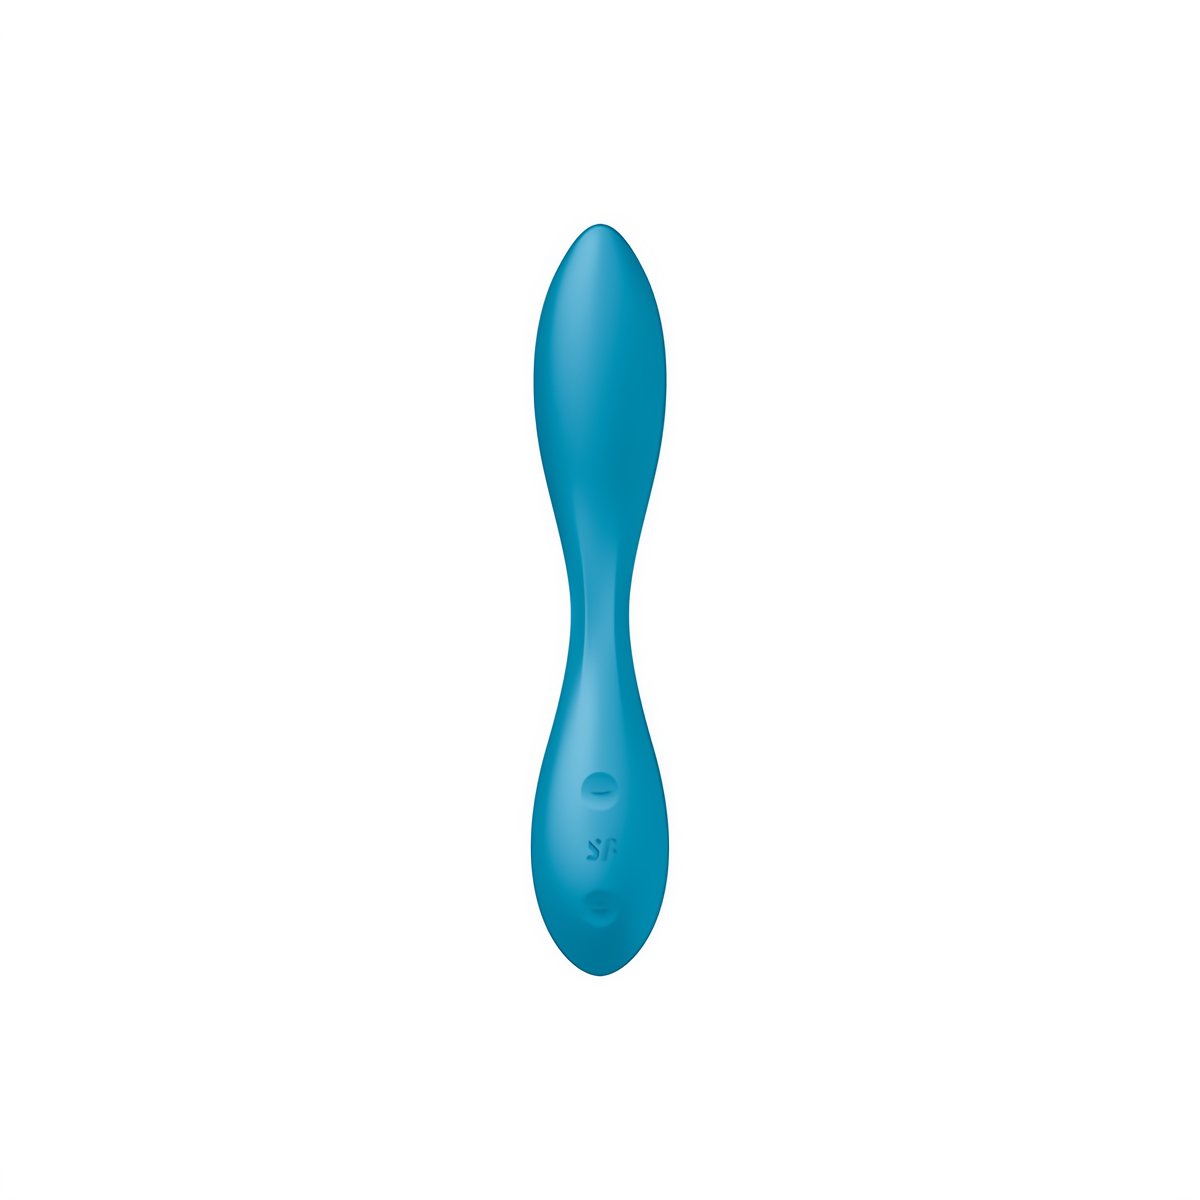 G - Spot Flex 1 - G - Spot Vibrator - EroticToyzProducten,Toys,Vibrators,G - Spot Vibrator,,GeslachtsneutraalSatisfyer